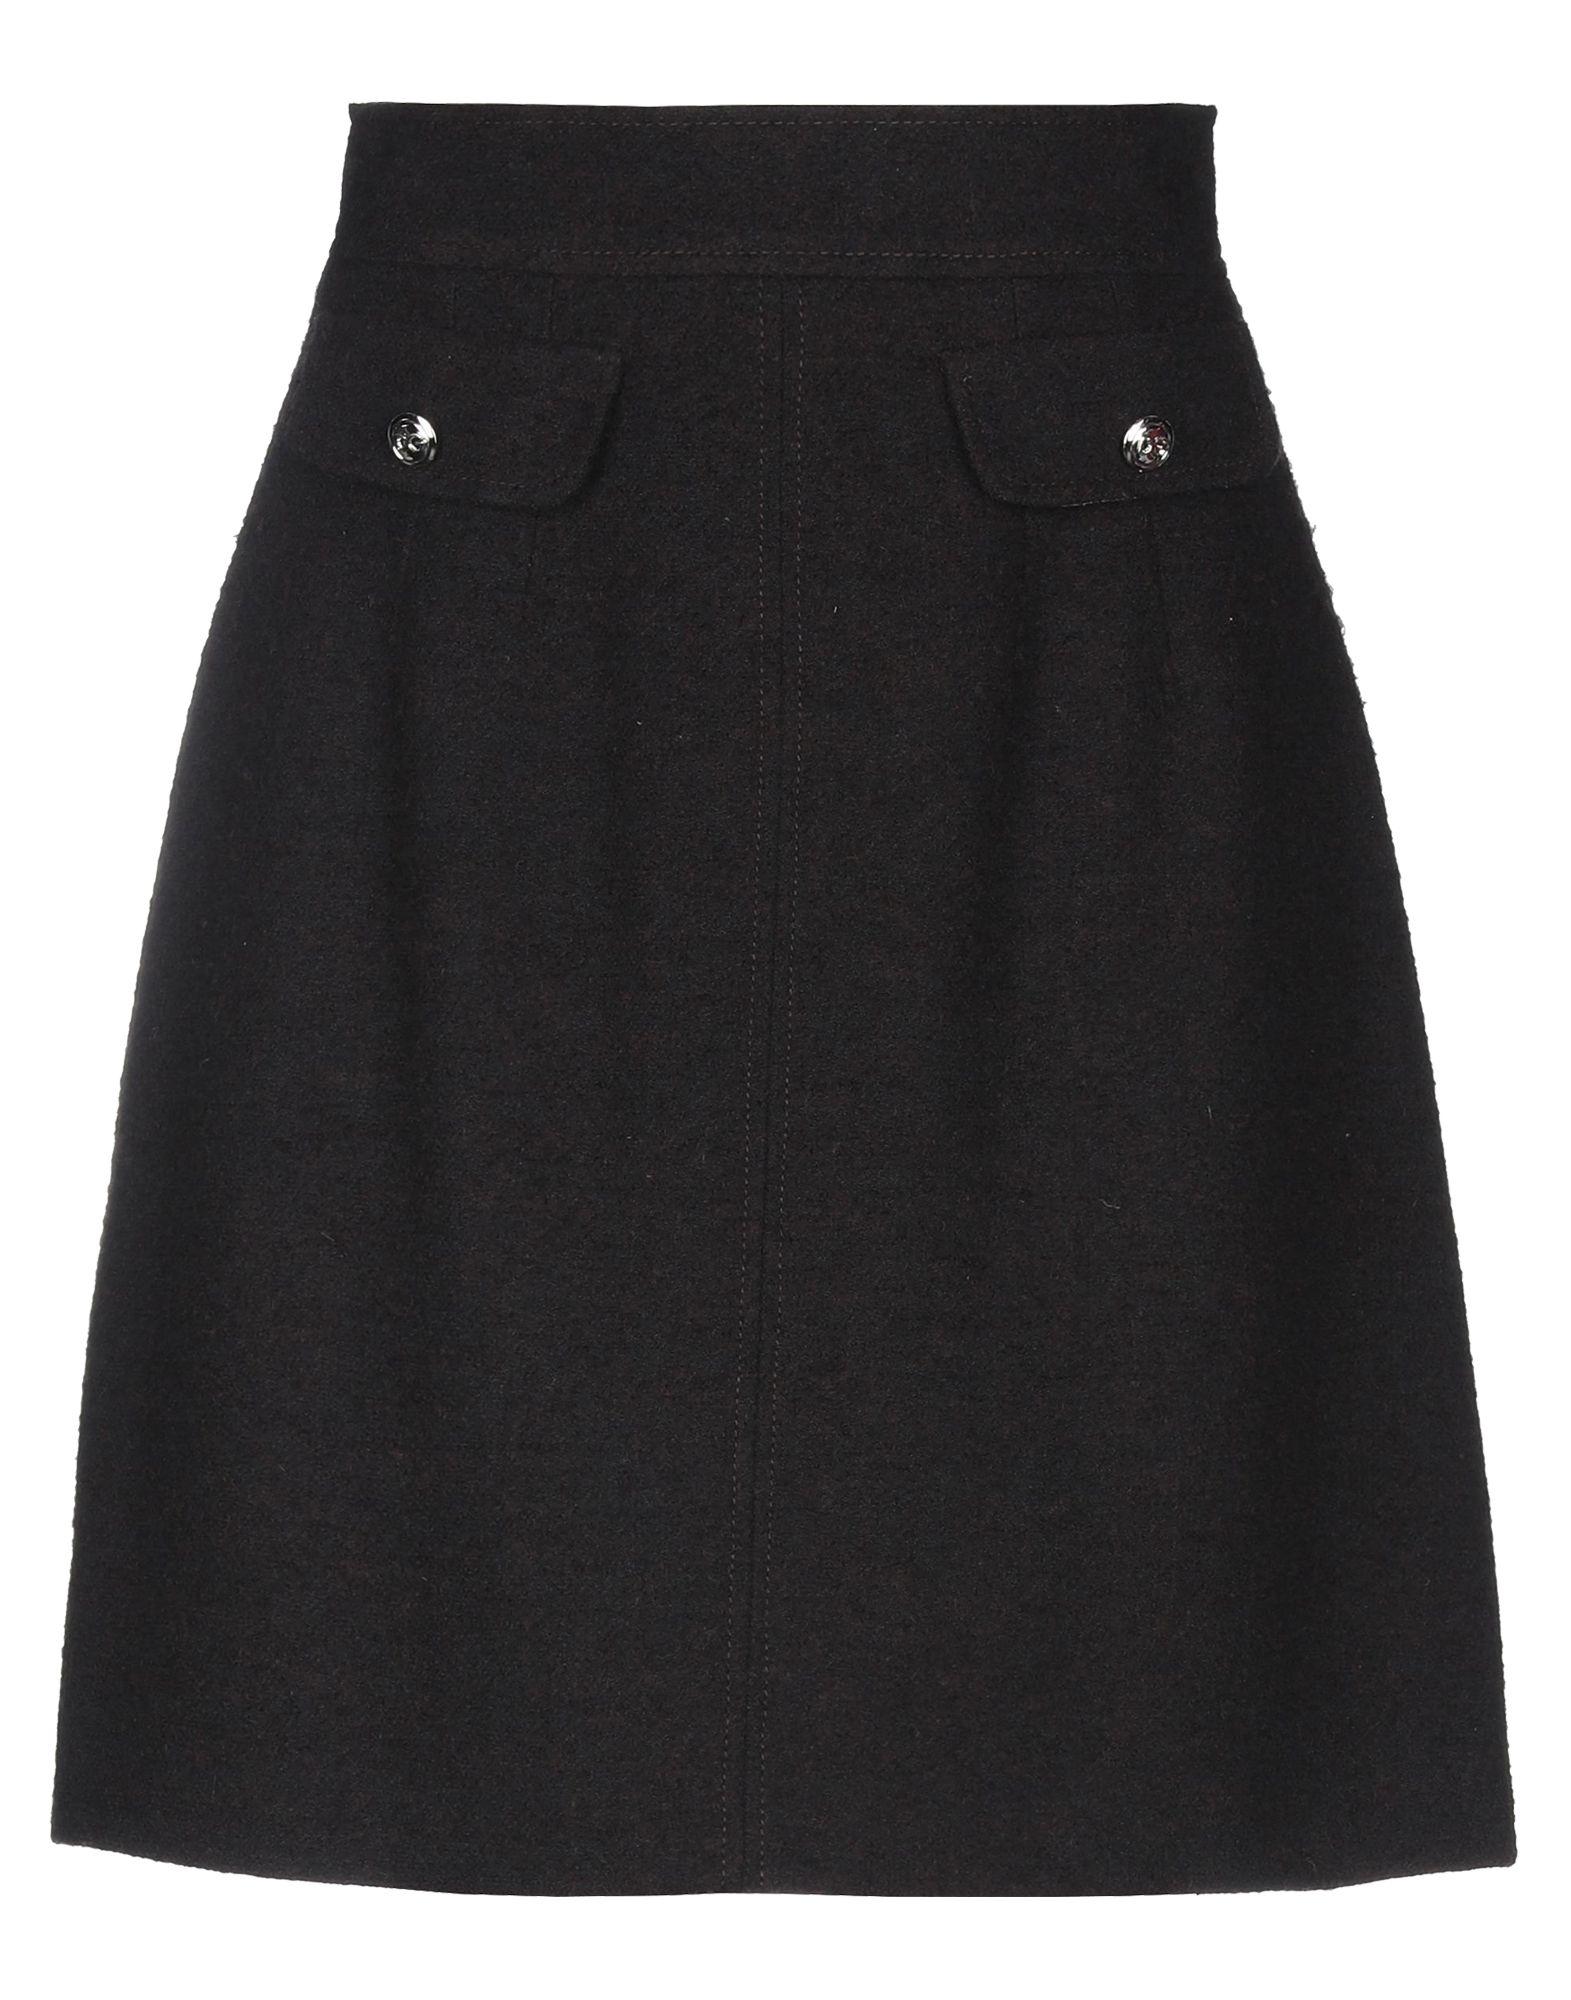 Dolce & Gabbana Wool Knee Length Skirt in Dark Brown (Brown) - Lyst